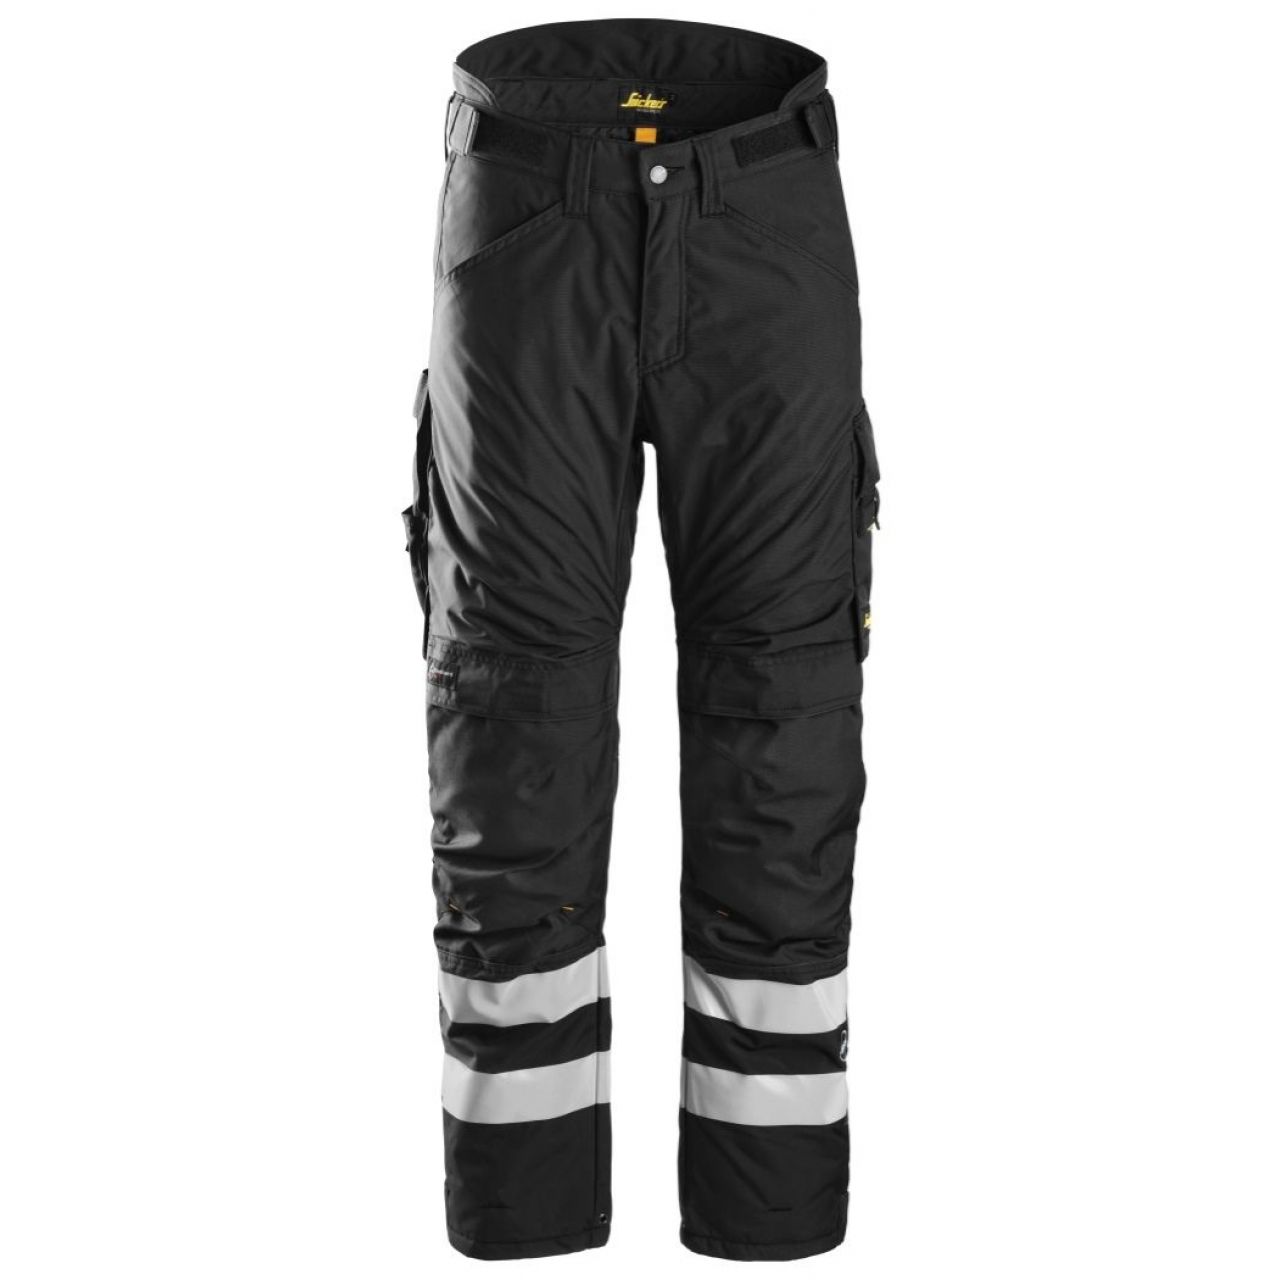 Pantalon aislante AllroundWork 37.5® negro talla L corto